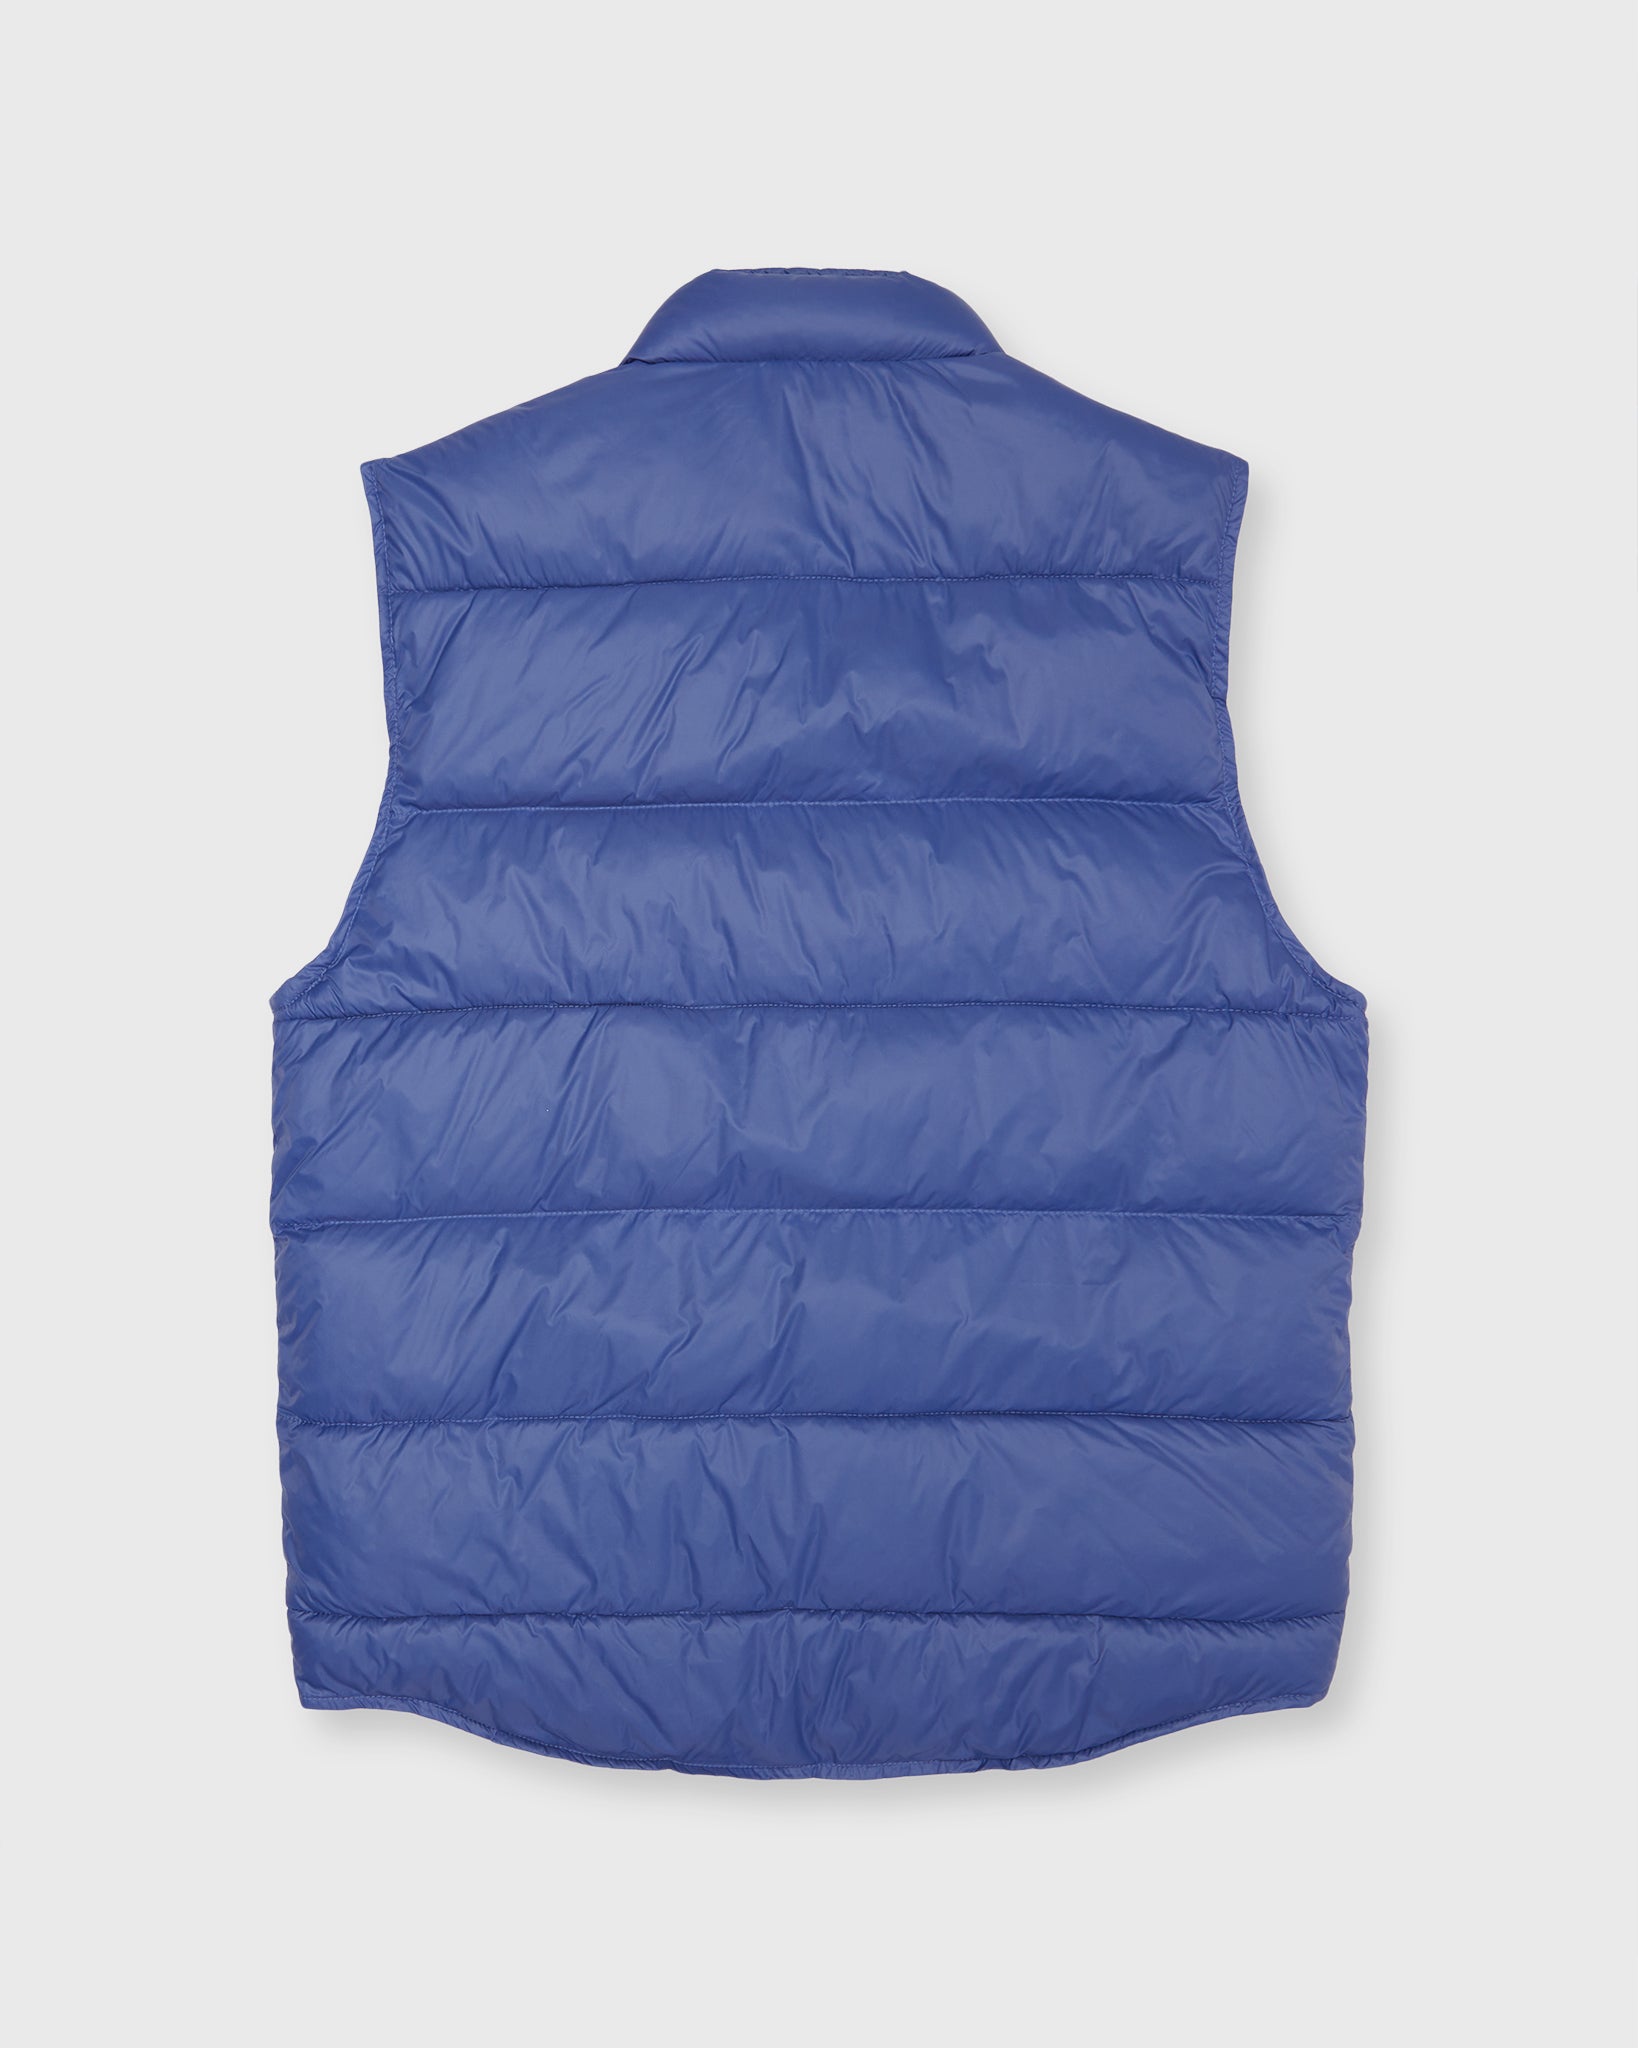 Cashball Traveler's Vest in Cornflower Nylon